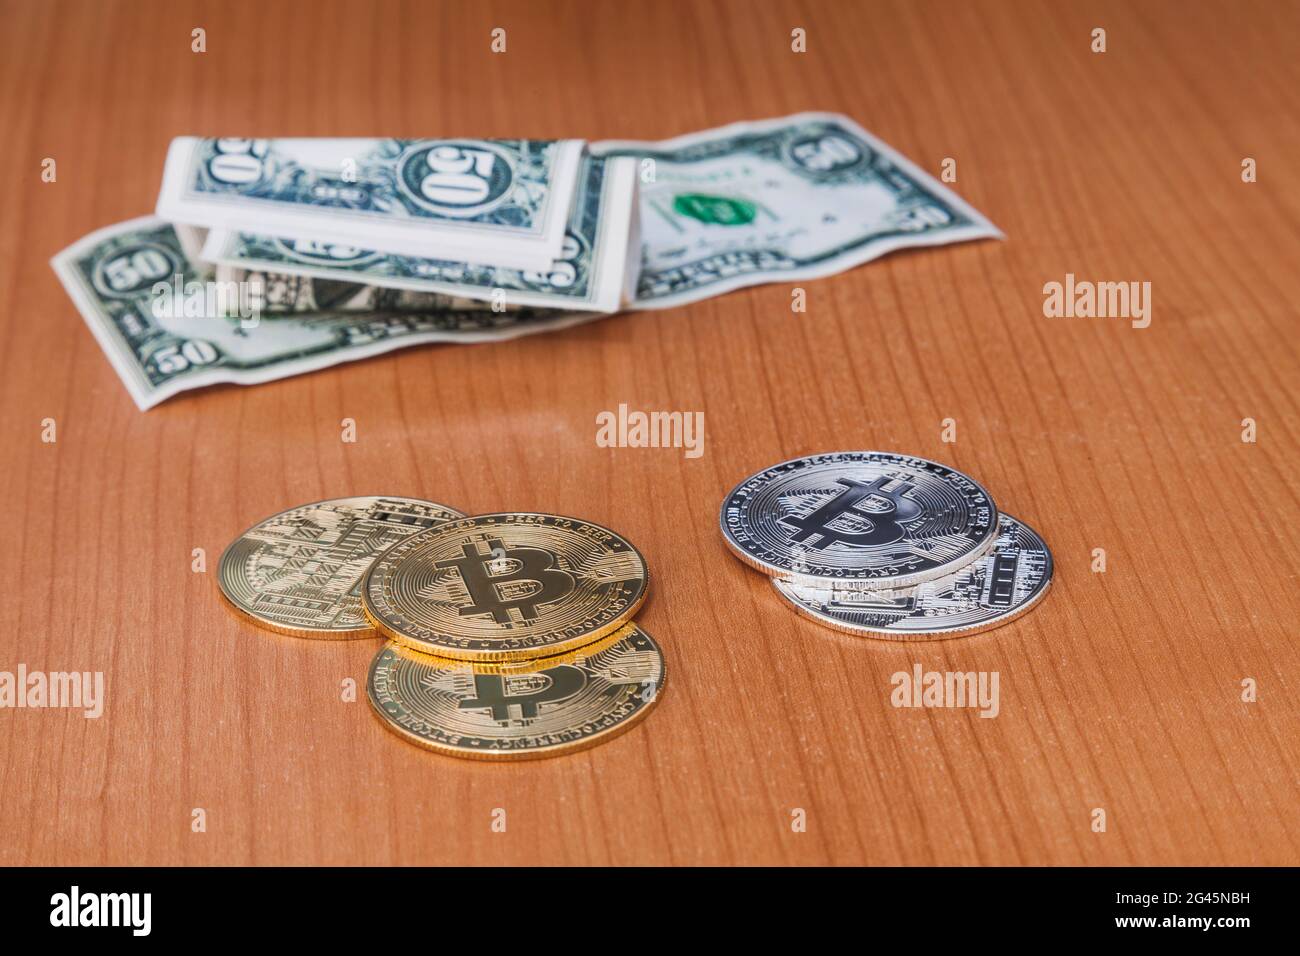 Cryptocurrencies e 50 dollari di bollette sulla cima di un tavolo di legno. Le monete sono a fuoco e le fatture sono fuori fuoco. Foto Stock